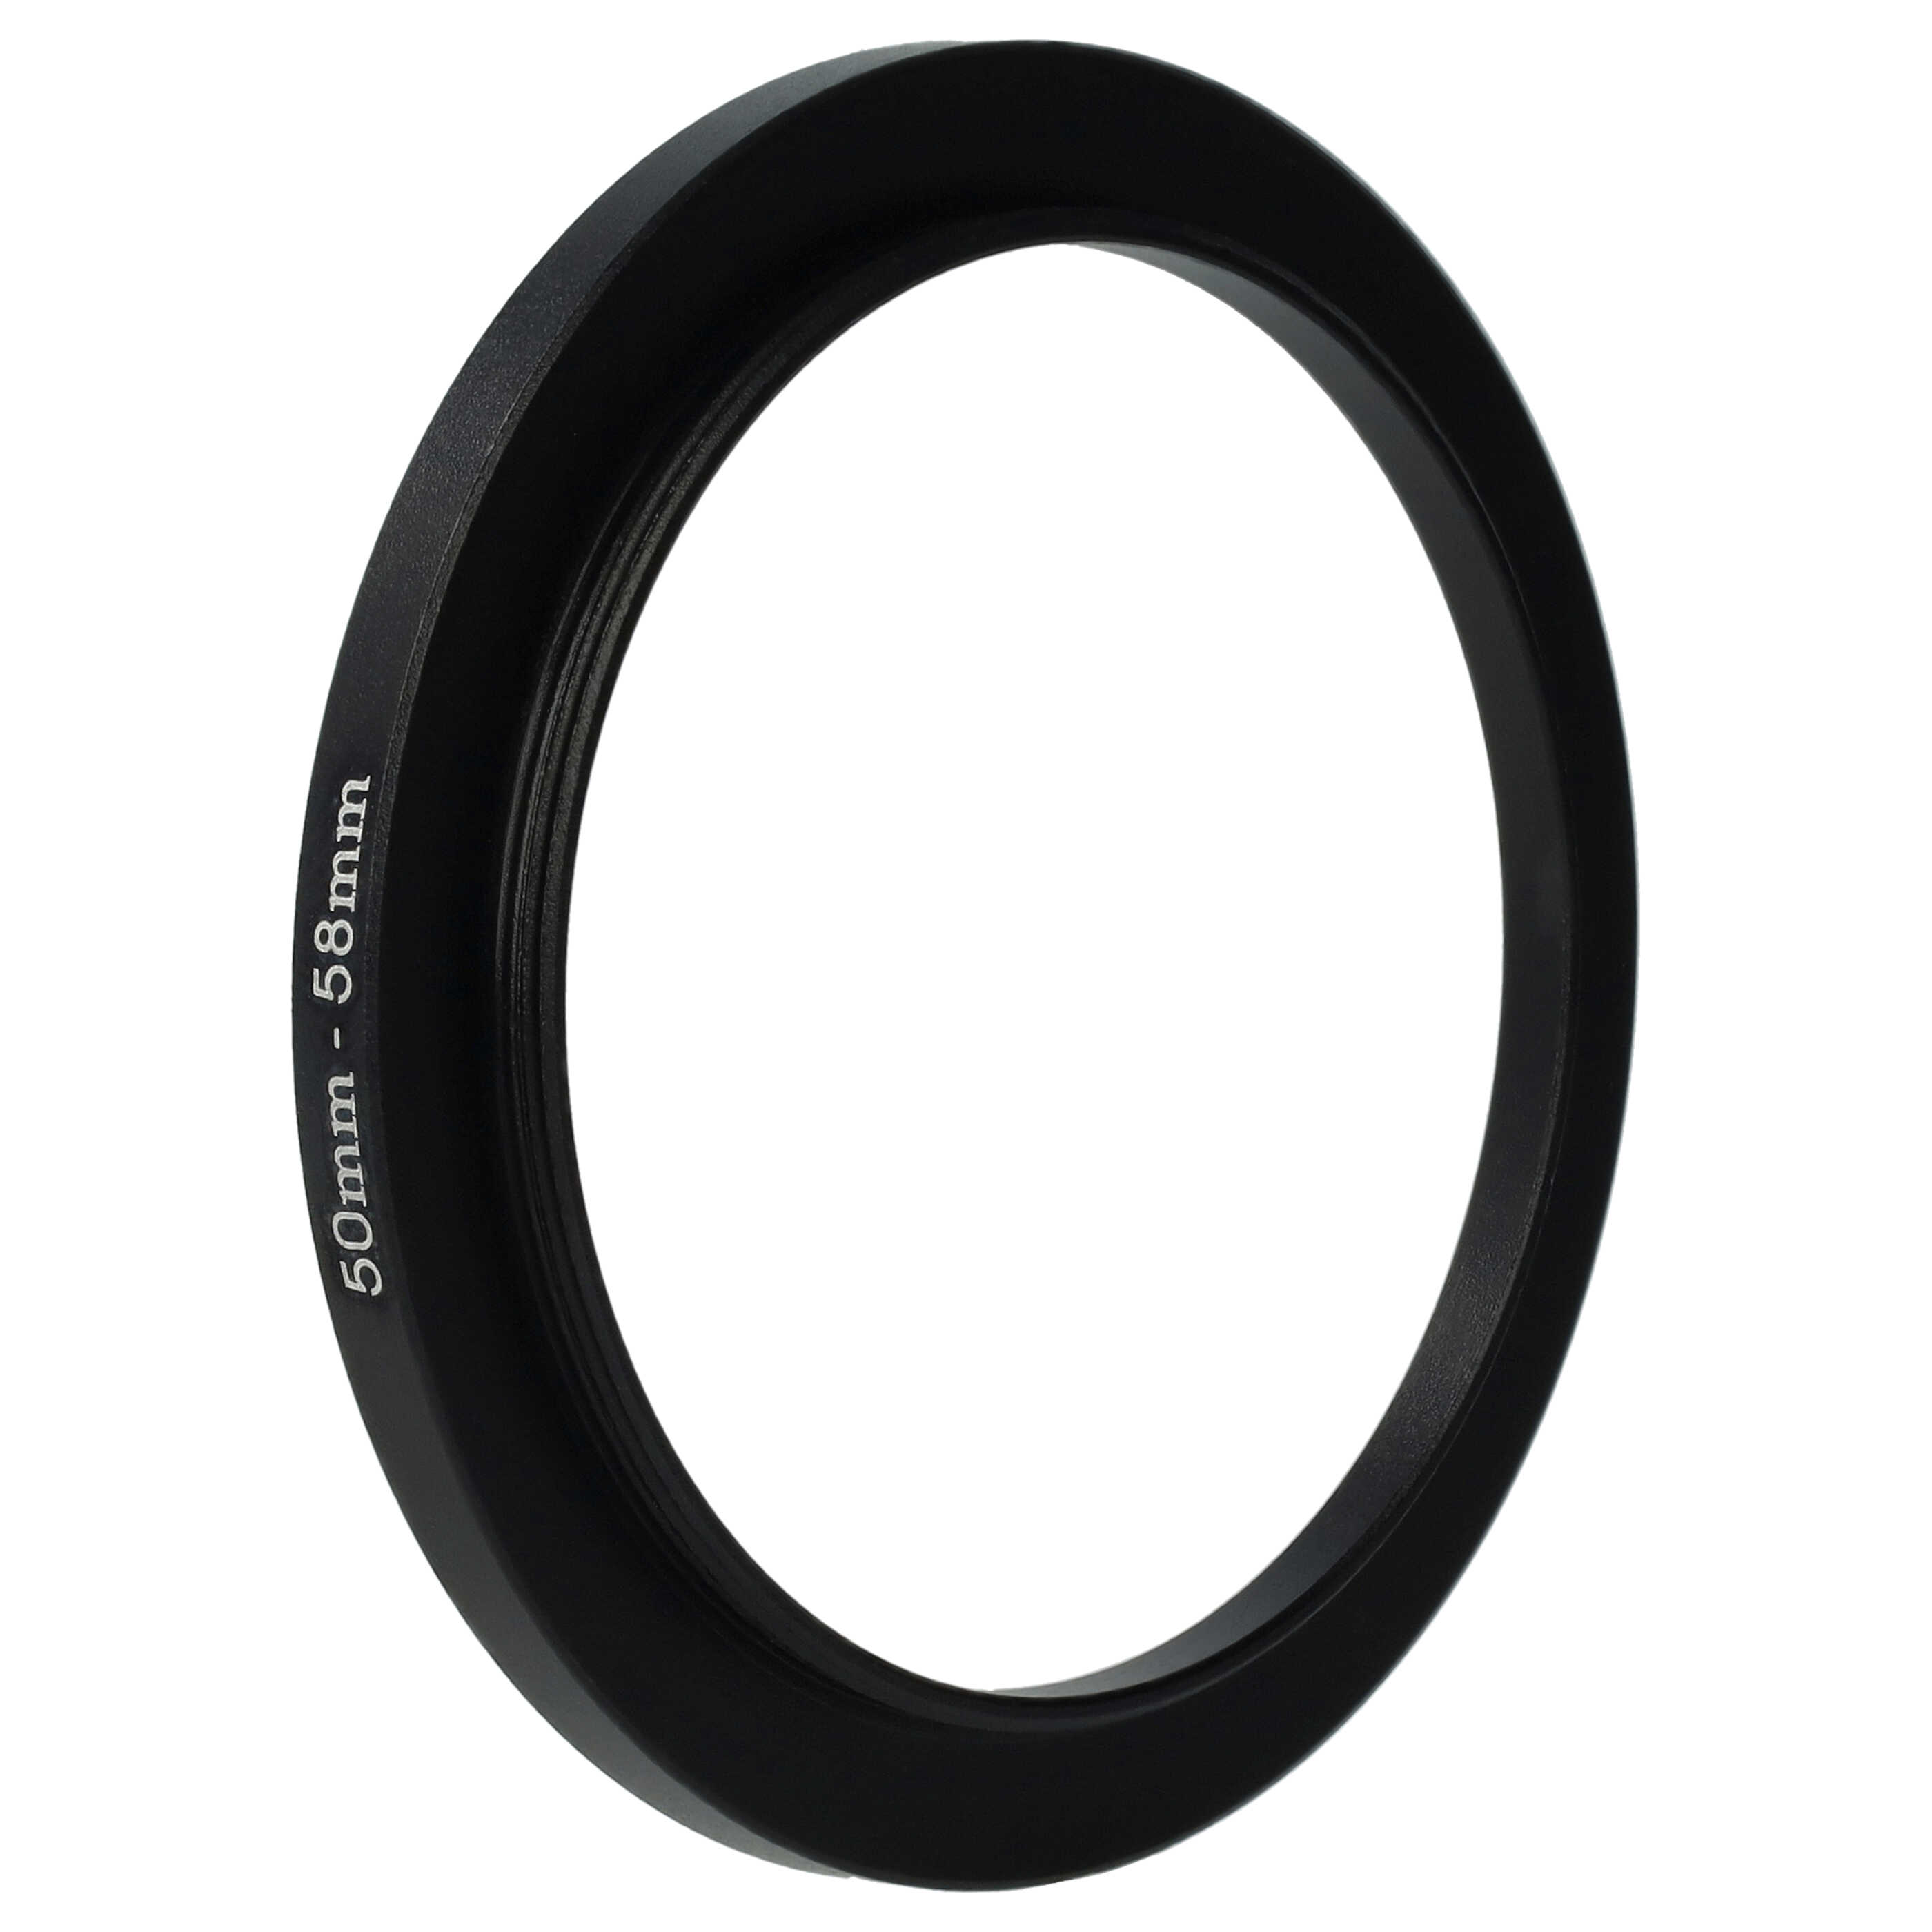 Step-Up-Ring Adapter 50 mm auf 58 mm passend für diverse Kamera-Objektive - Filteradapter